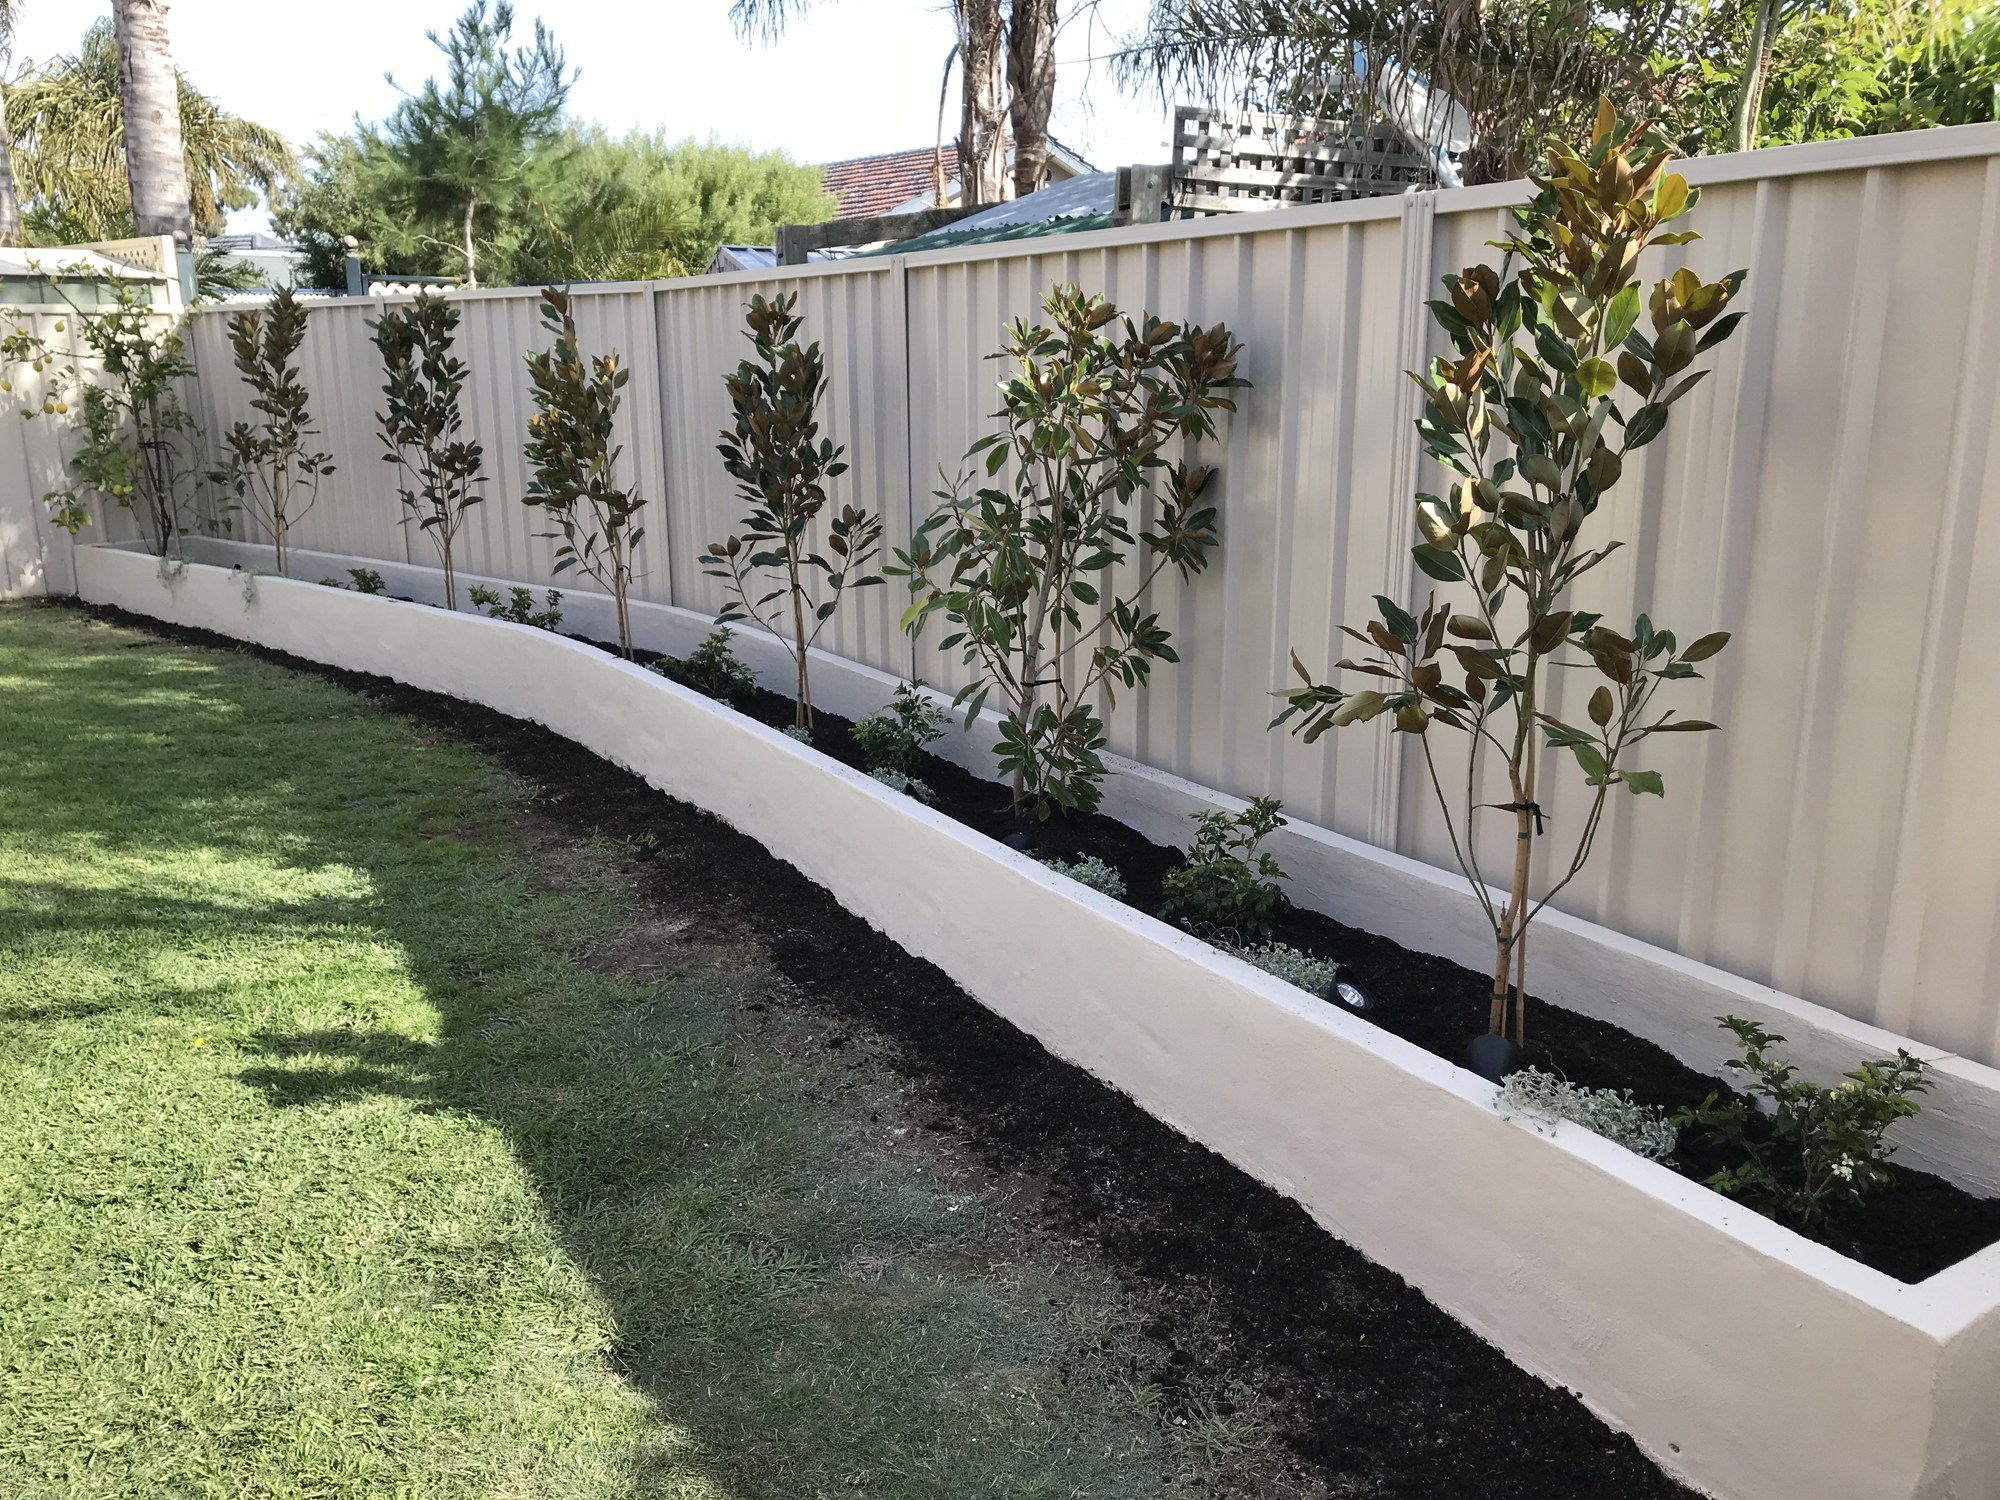 Nova Gardens Garden Design Solutions - Australian Backyard Garden Ideas